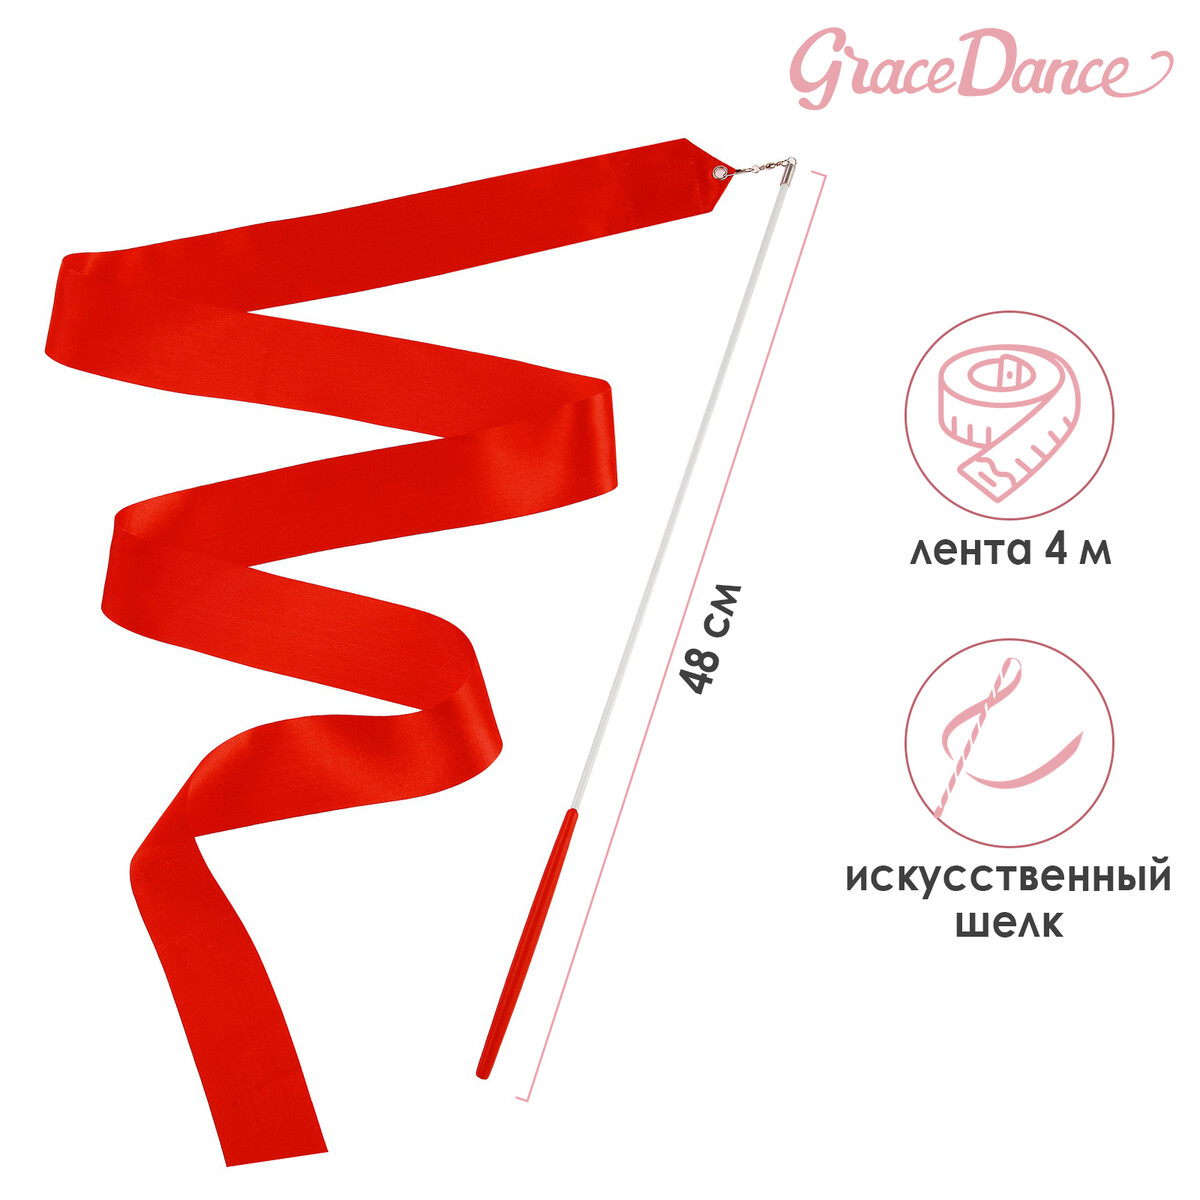 Лента для художественной гимнастики с палочкой grace dance, 4 м, цвет красный лента фиксации rockbros для перевозки и хранения велосипедов зеленый rb 51210071002